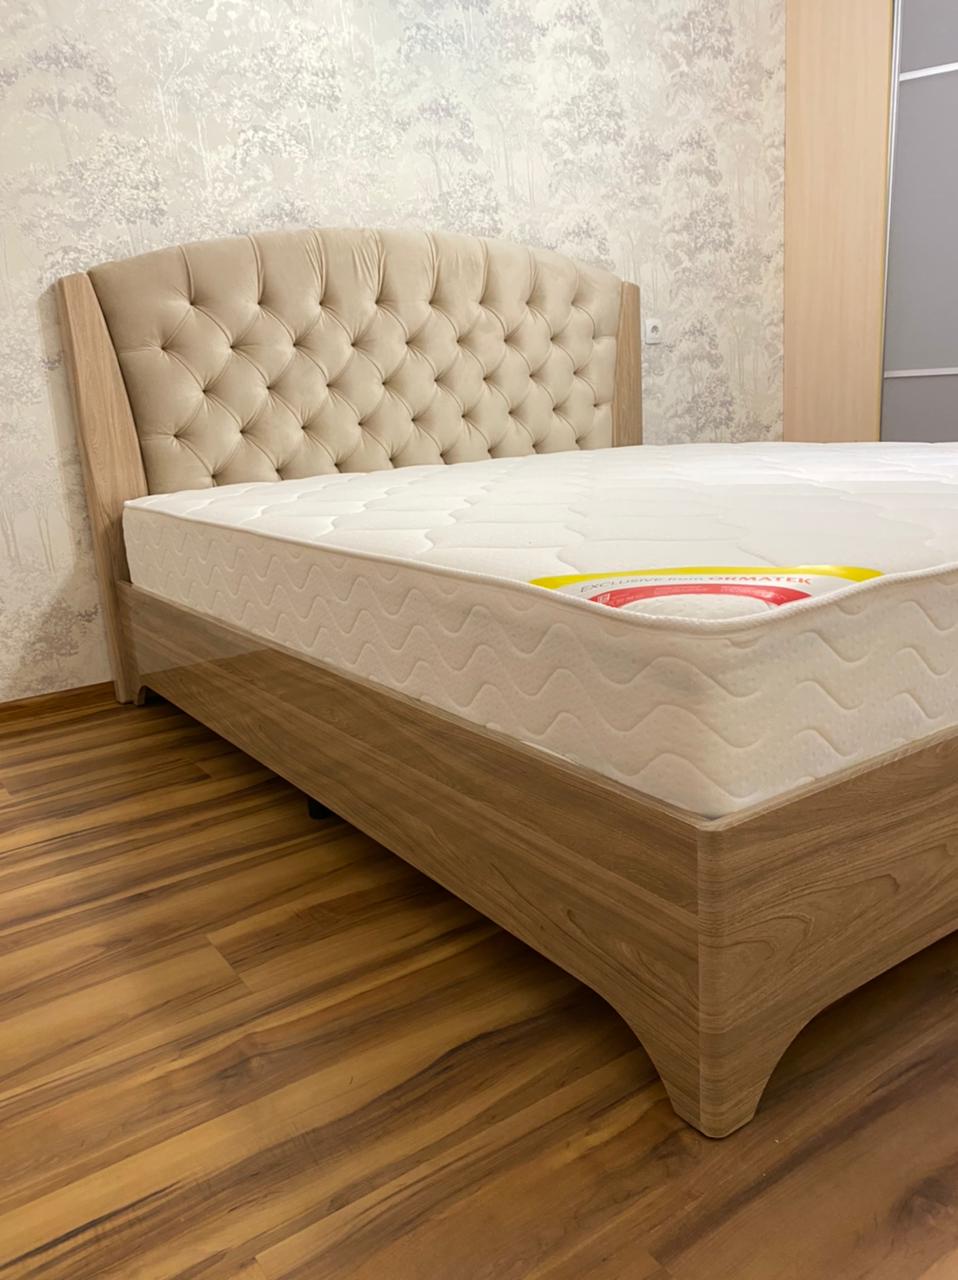 Односпальная кровать "Милан" 90 х 190 с подъемным механизмом цвет дуб скальный глянец / best 04